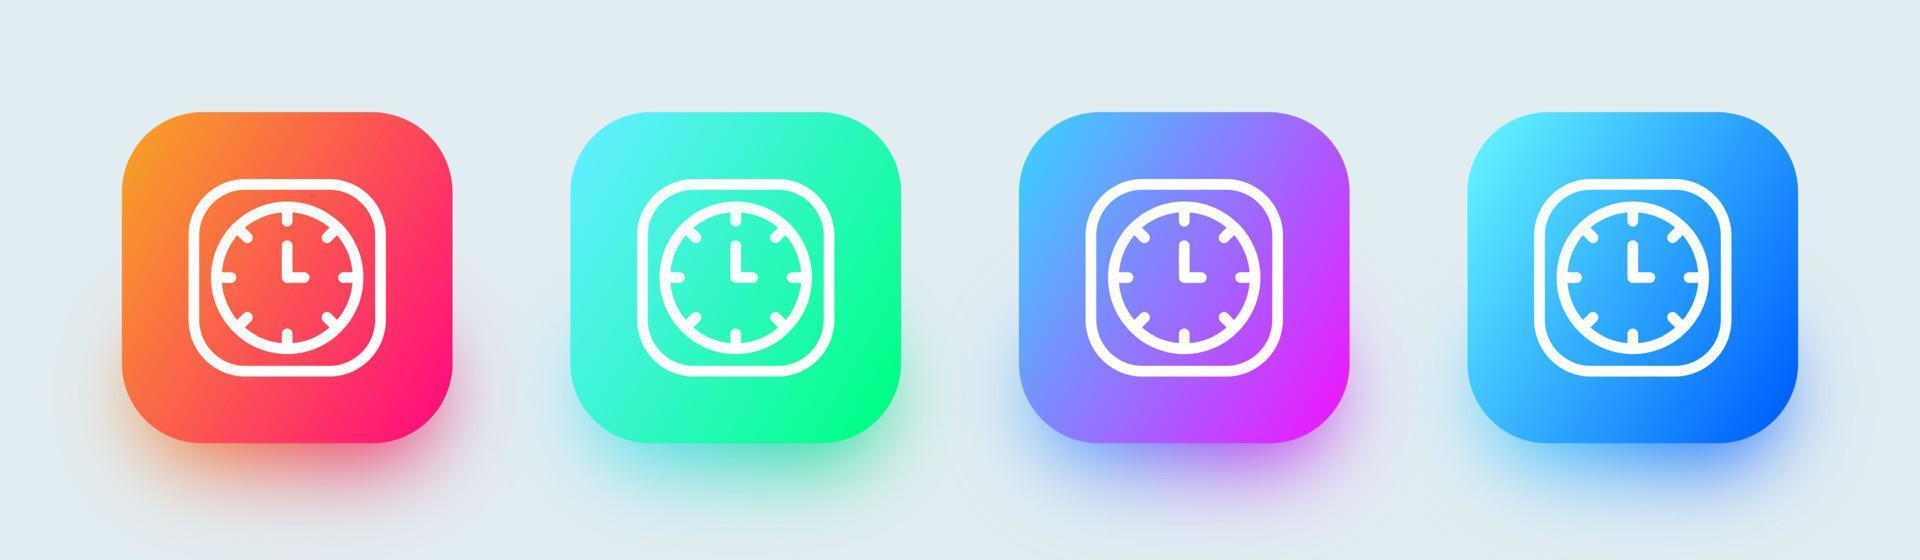 icône de ligne d'horloge dans des couleurs dégradées carrées. illustration vectorielle de signes de temps vecteur